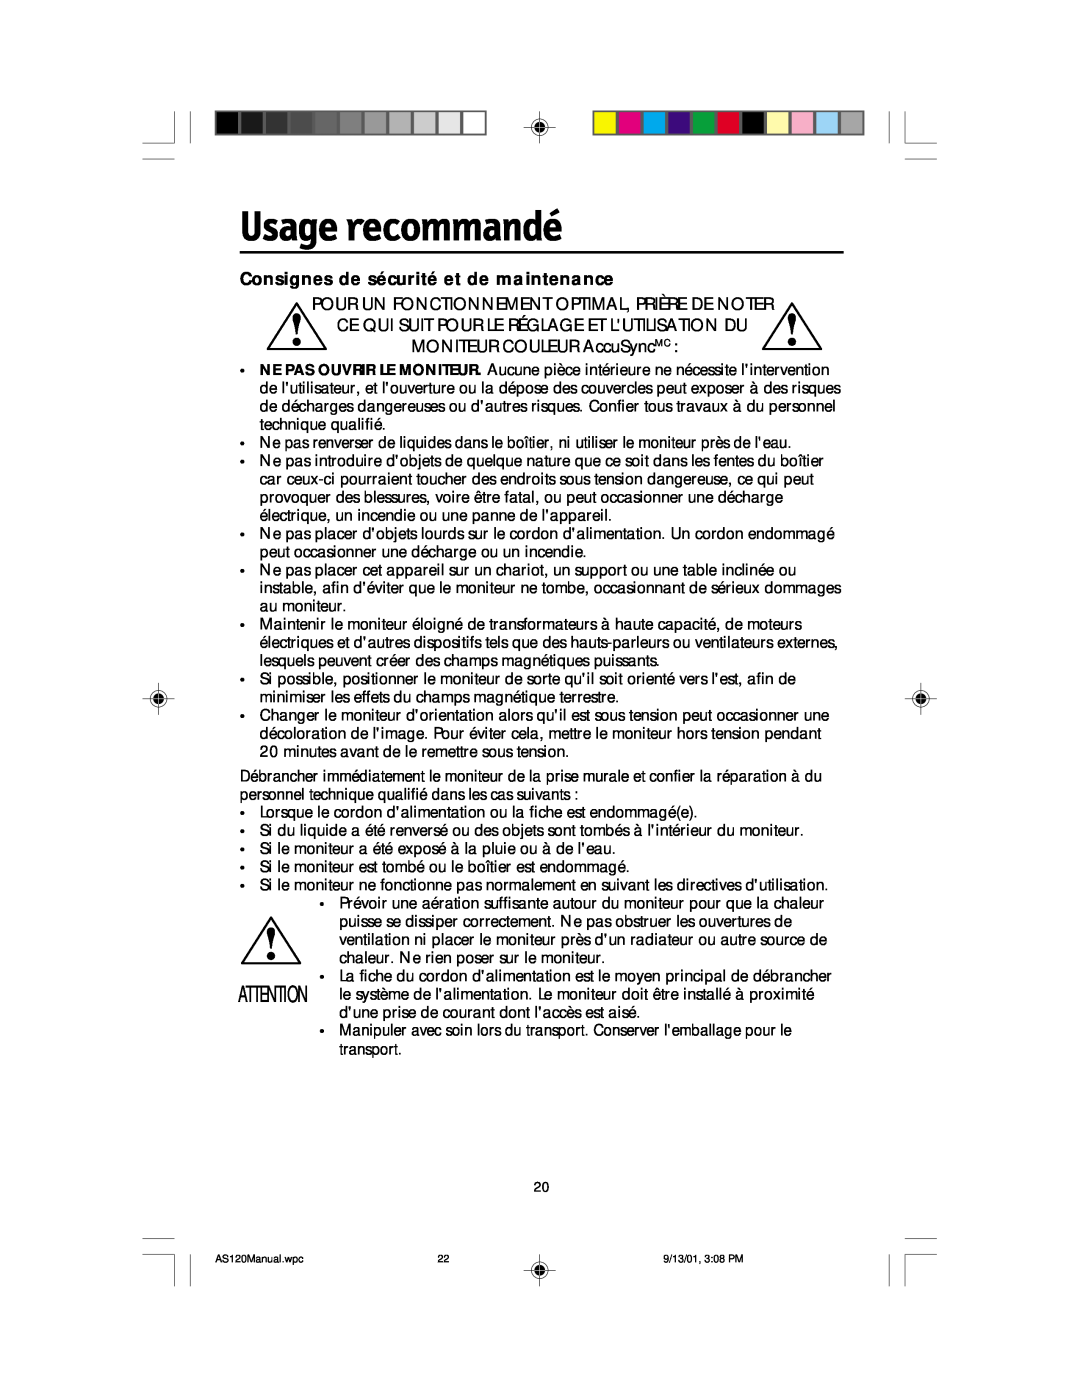 NEC AccuSync 120 user manual Usage recommandé, Consignes de sécurité et de maintenance 